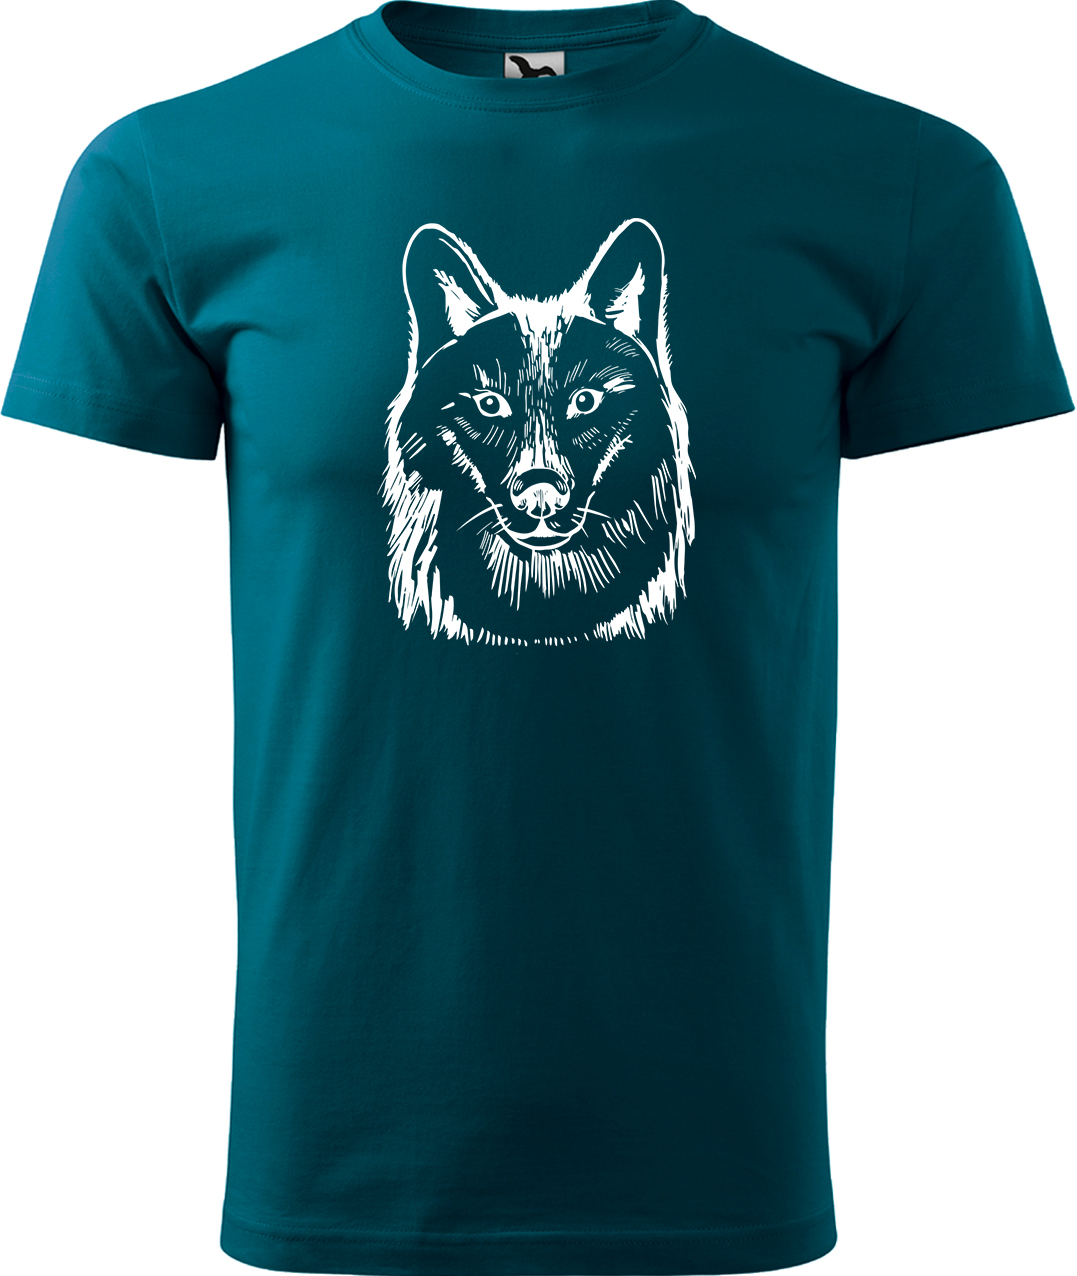 Pánské tričko s vlkem - Kresba vlka Velikost: 3XL, Barva: Petrolejová (93), Střih: pánský